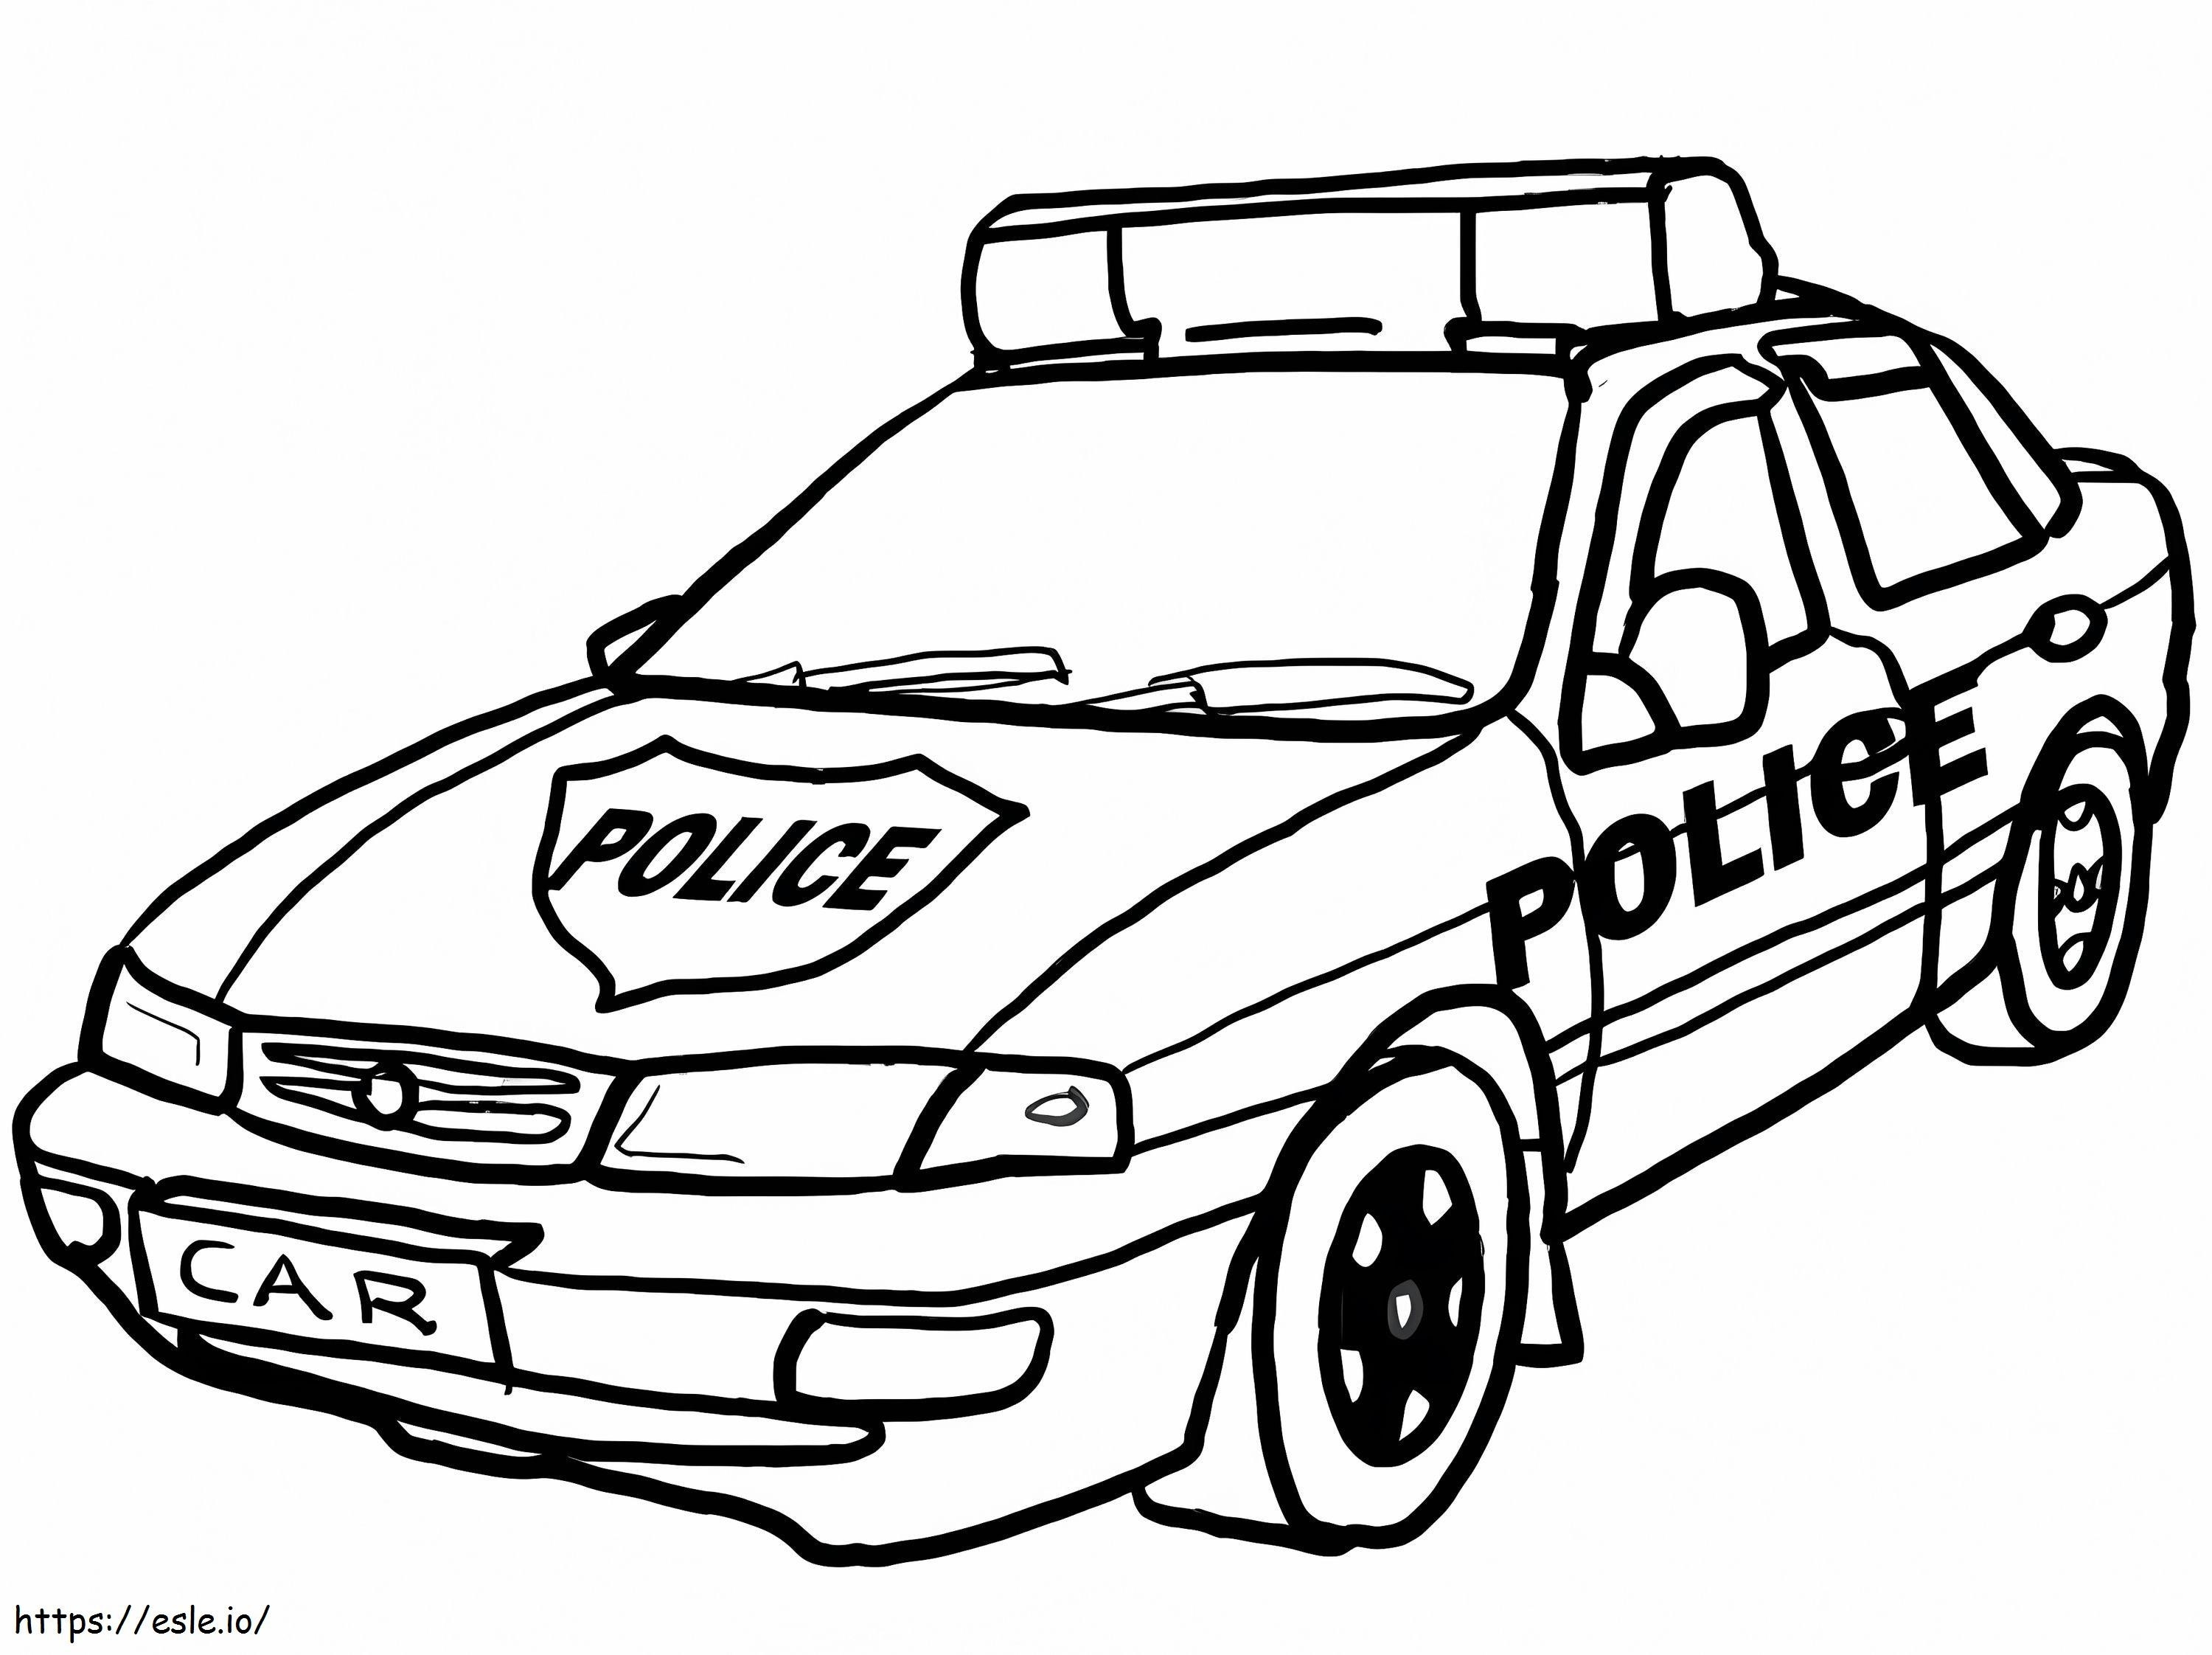 Polis Arabası 4 boyama